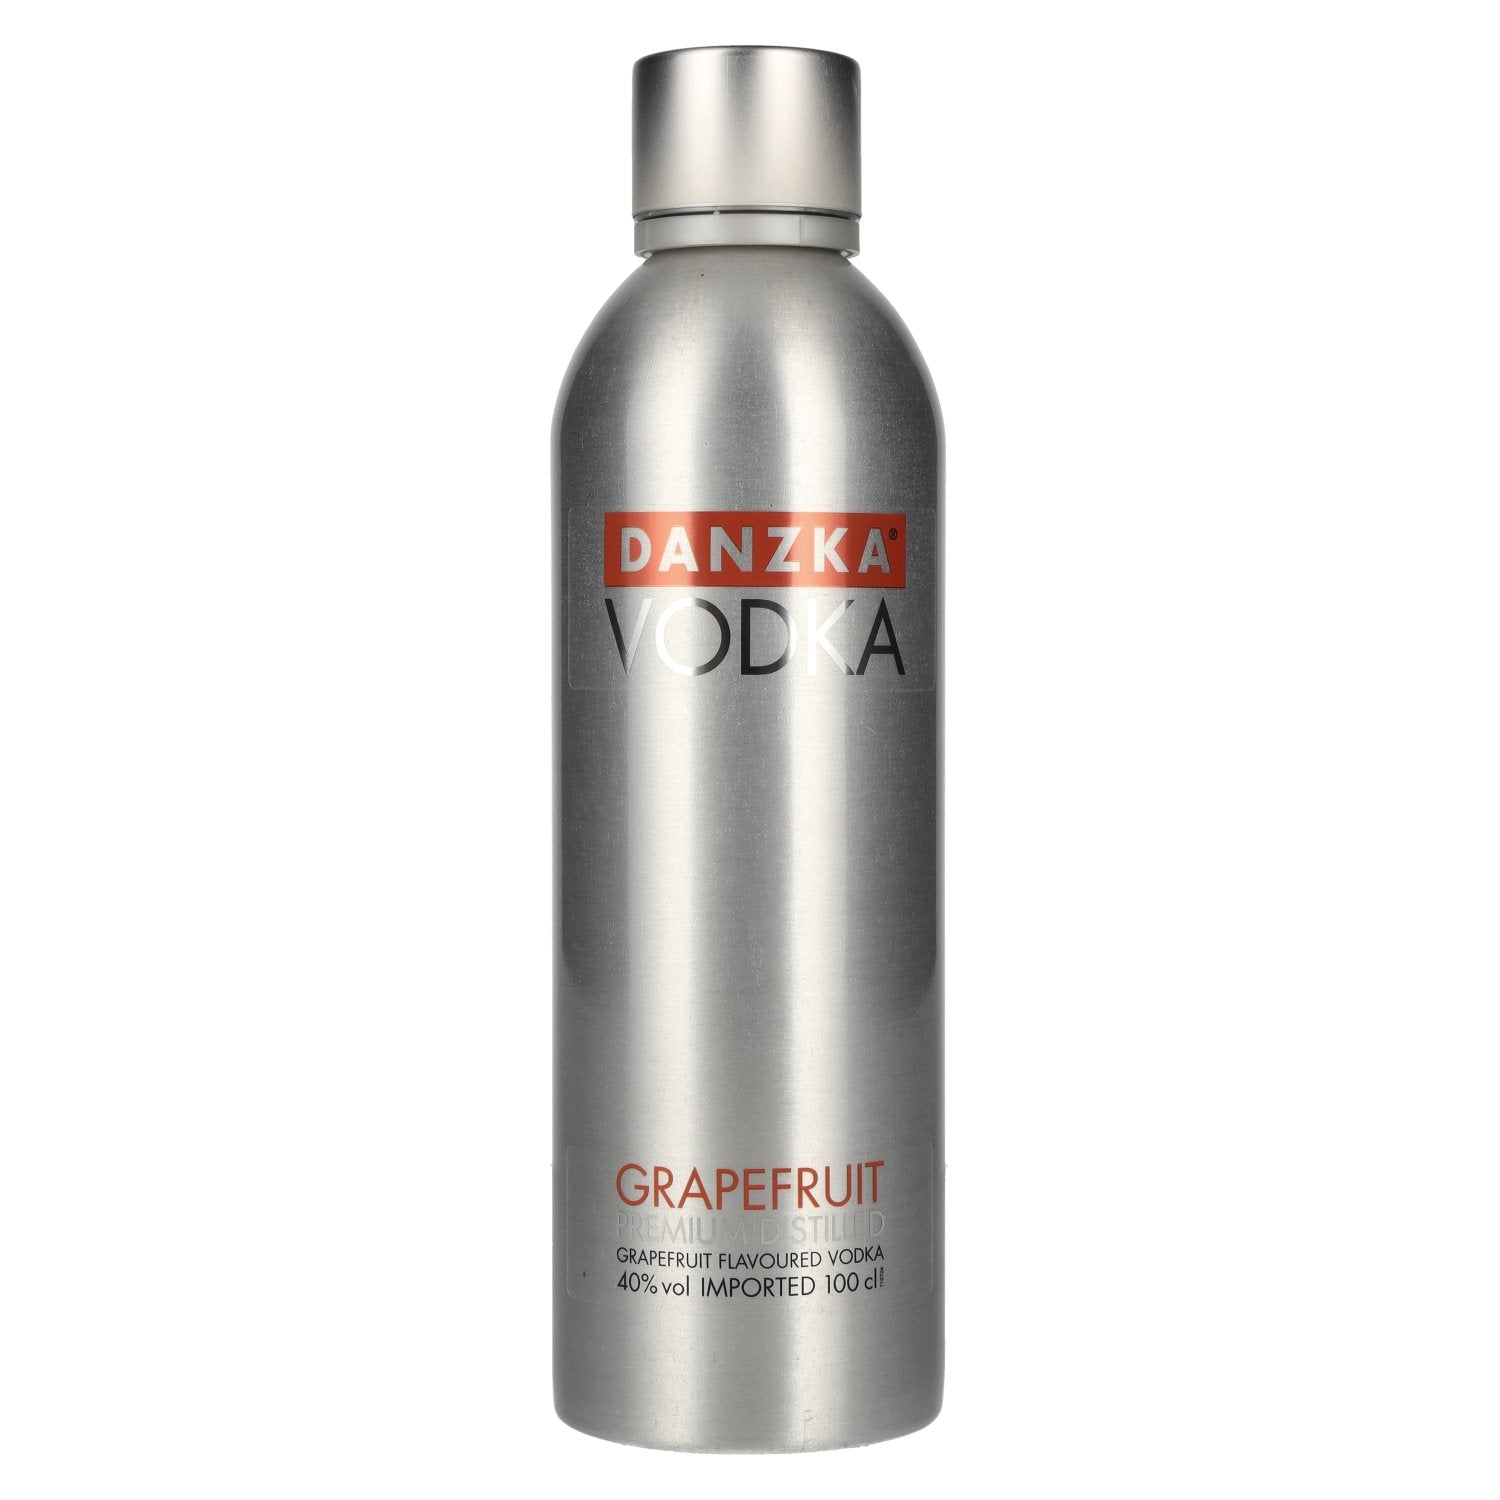 Danzka Vodka GRAPEFRUIT Premium Distilled Flavoured Vodka 40% Vol. 1l